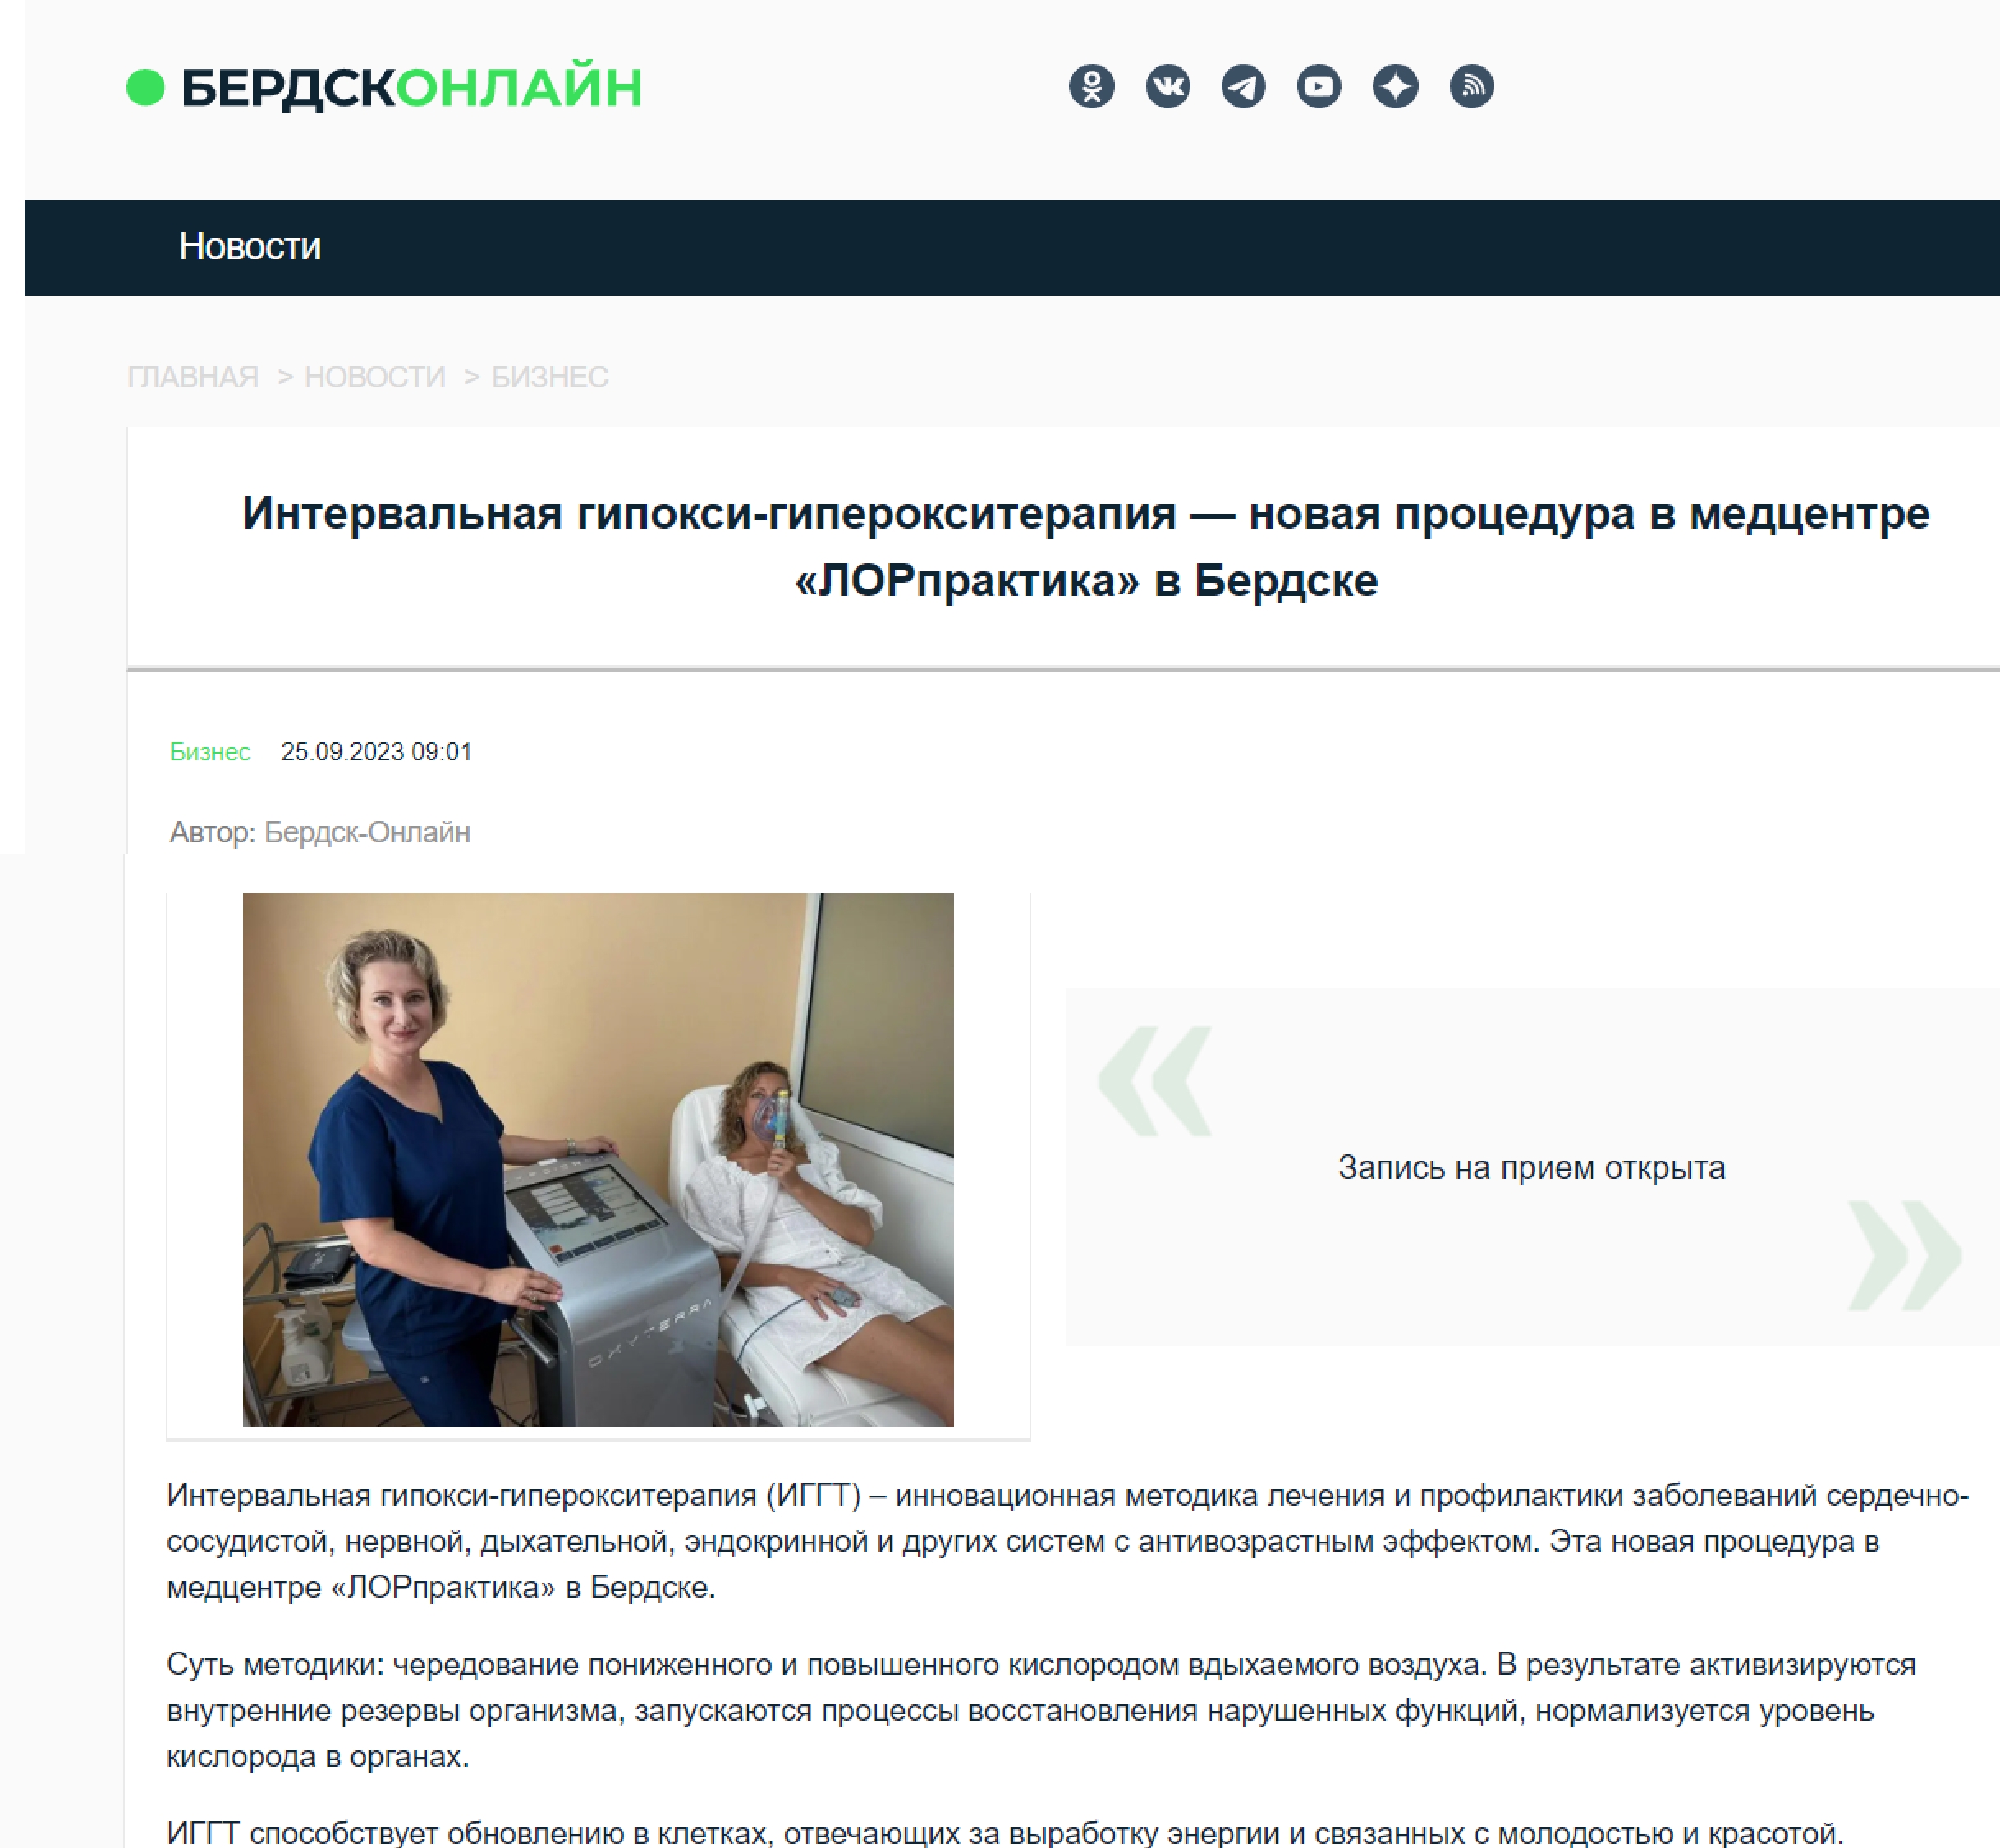 Интервальная гипокси-гиперокситерапия — новая процедура в медцентре «ЛОРпрактика» в Бердске